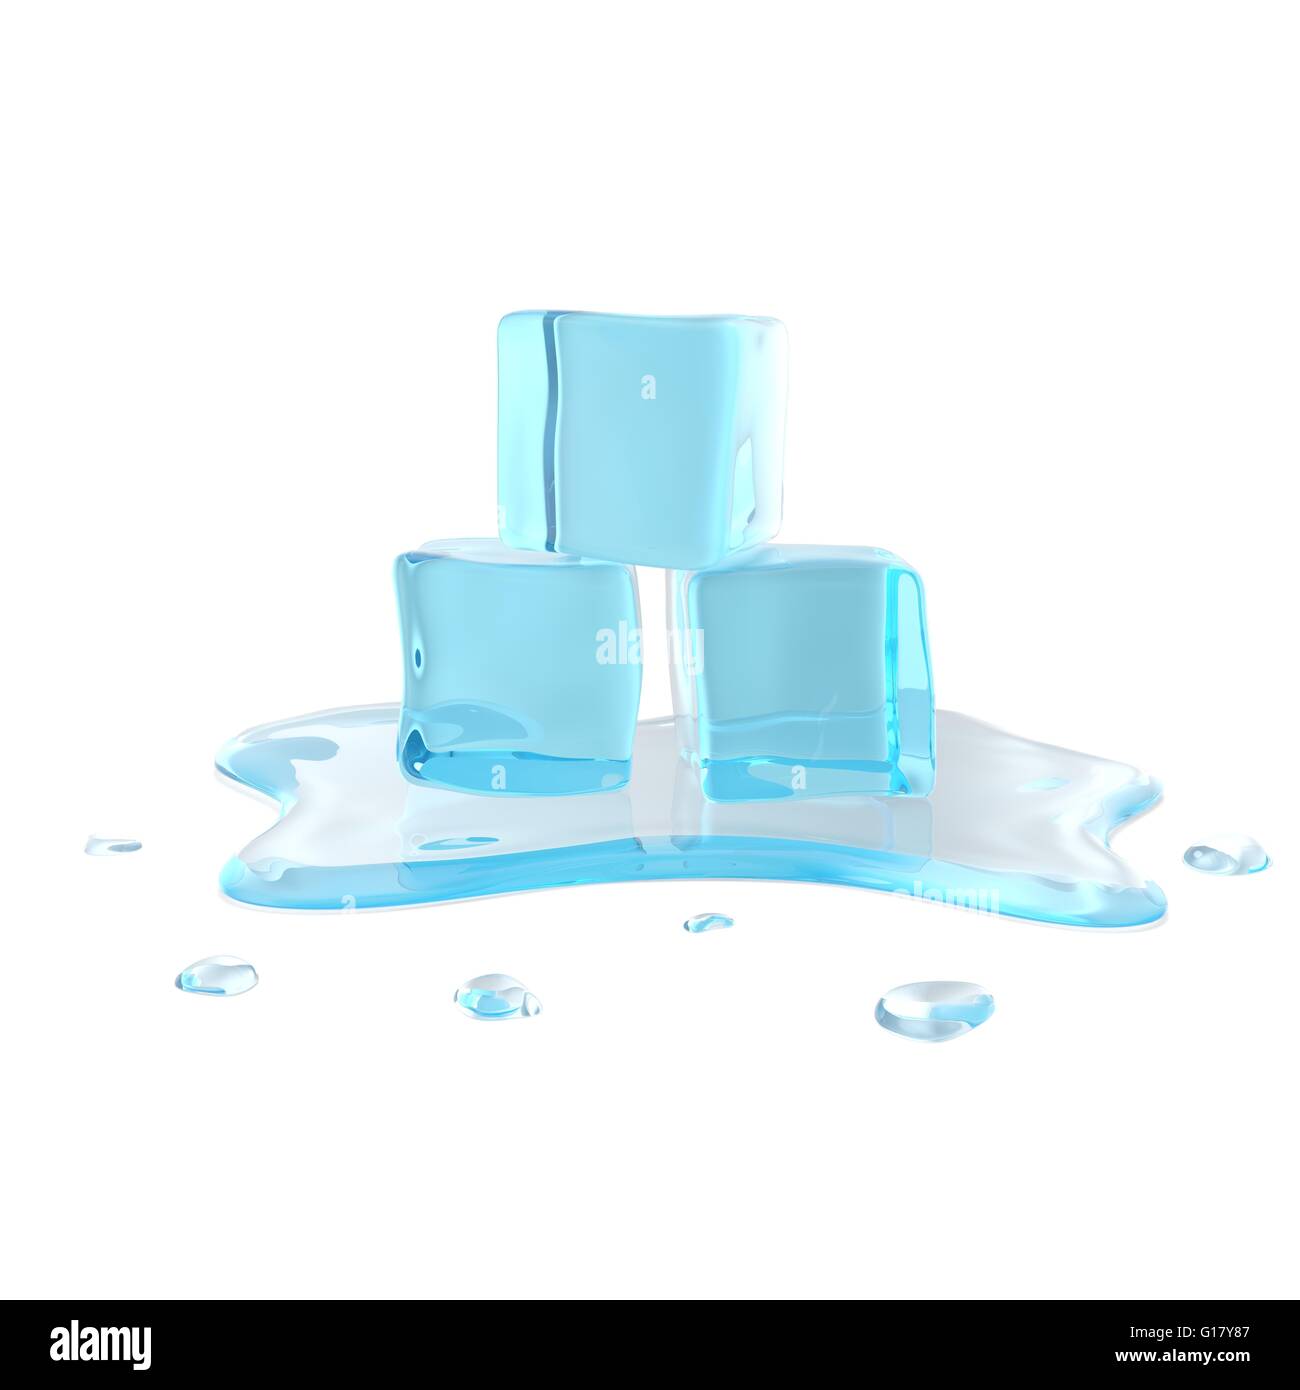 Melting ice cubes isolated on white background. Stock Photo